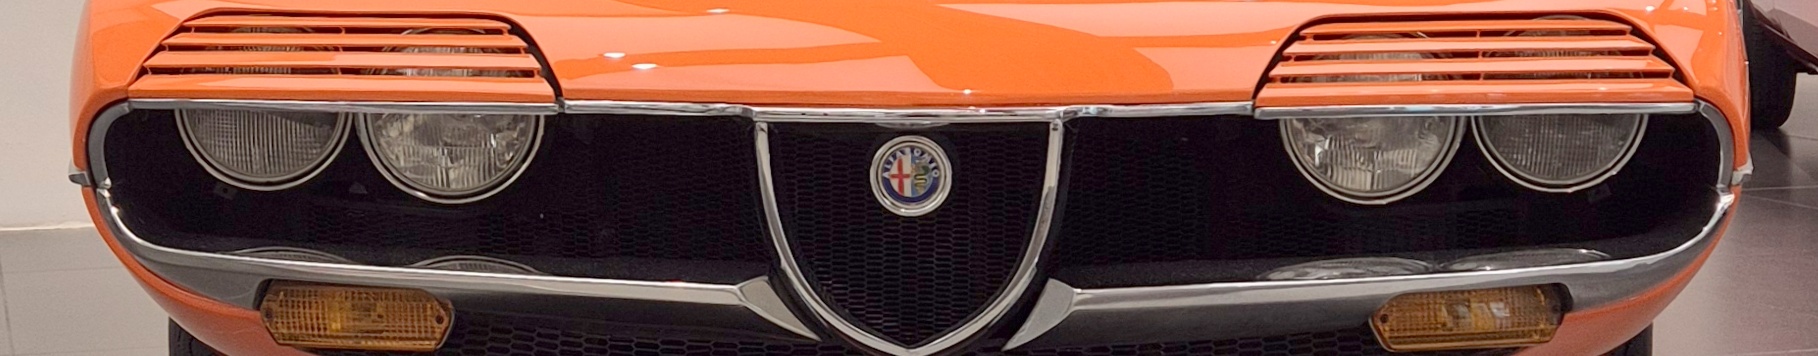 Alfaclub Alfa Romeo Montreal Register